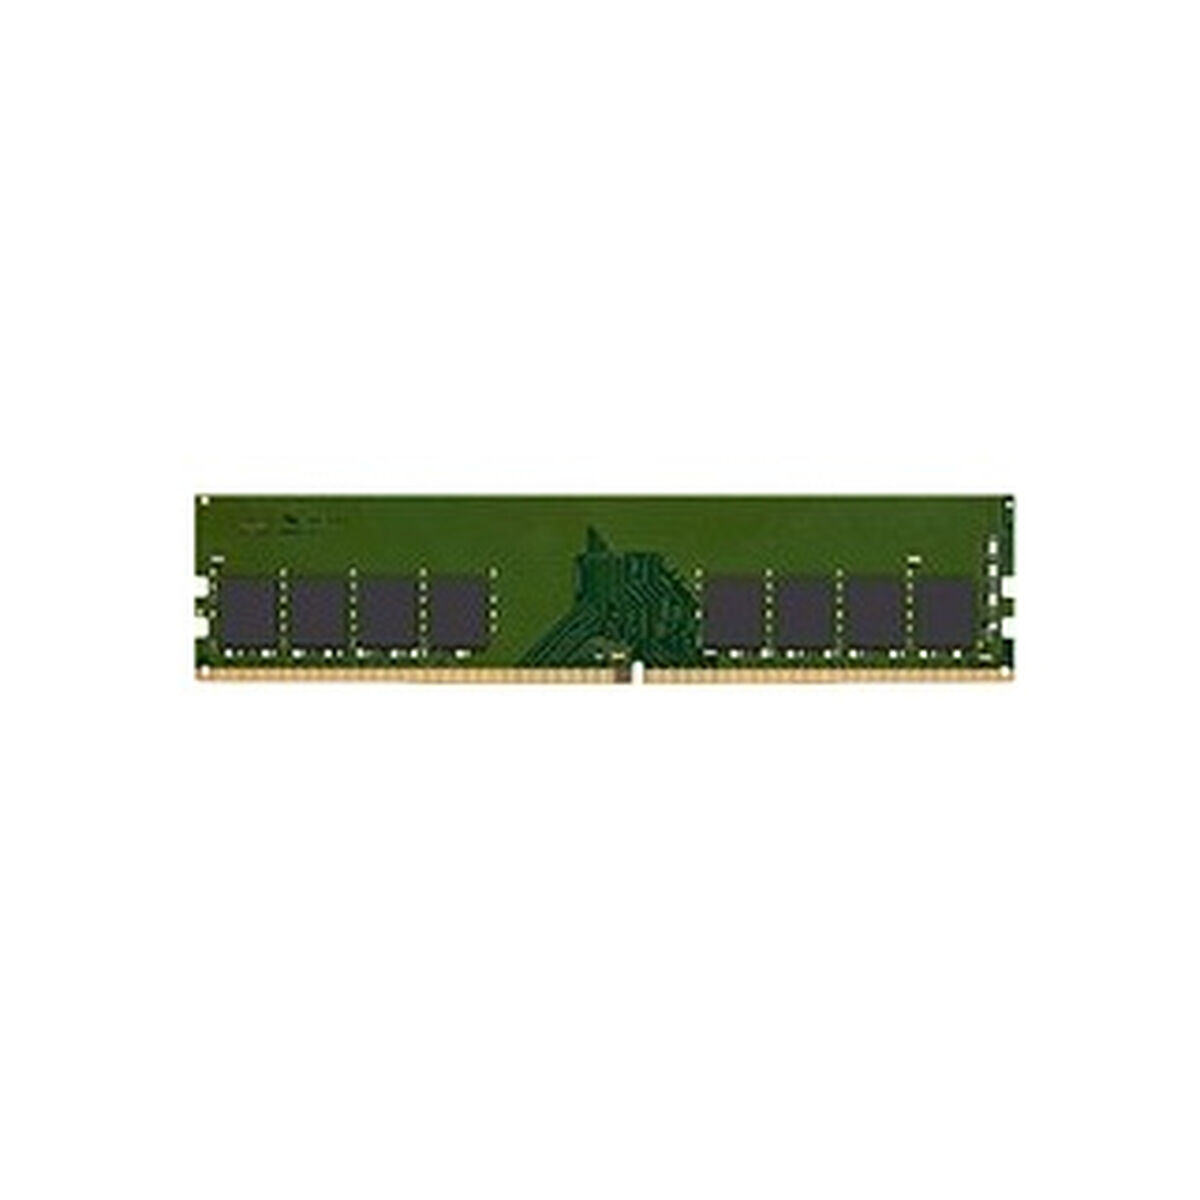 RAM Speicher Kingston KCP432NS8/8 8GB DDR4